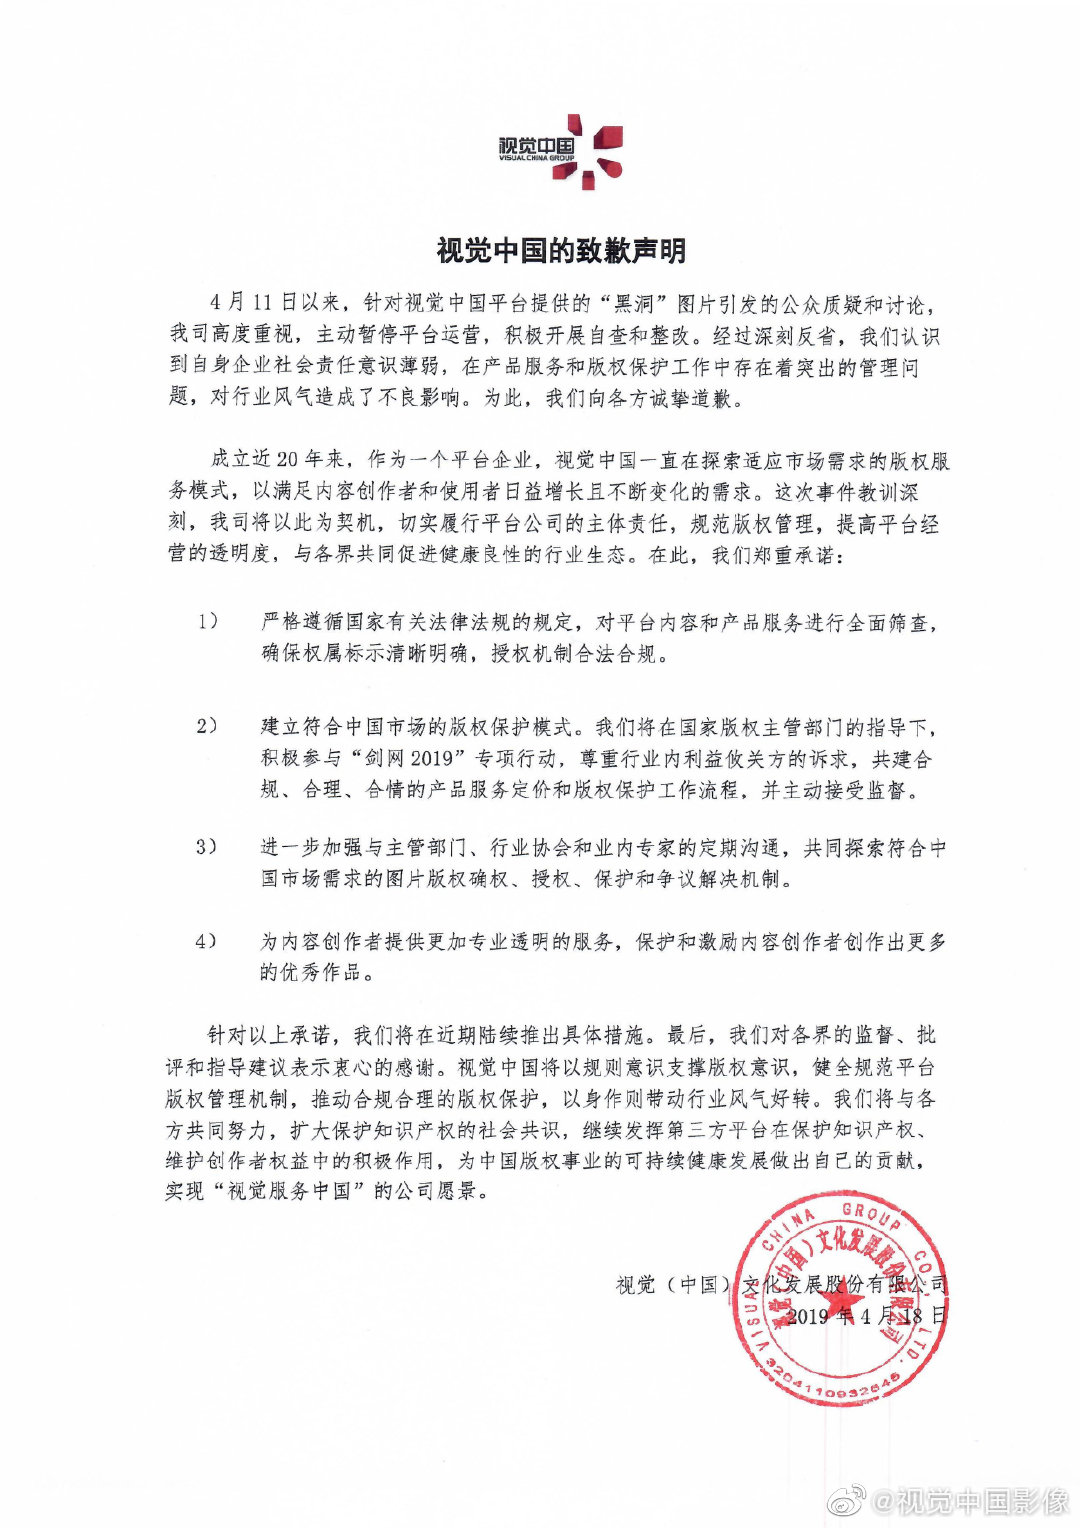 视觉中国致歉：承诺建立符合中国市场的版权保护模式